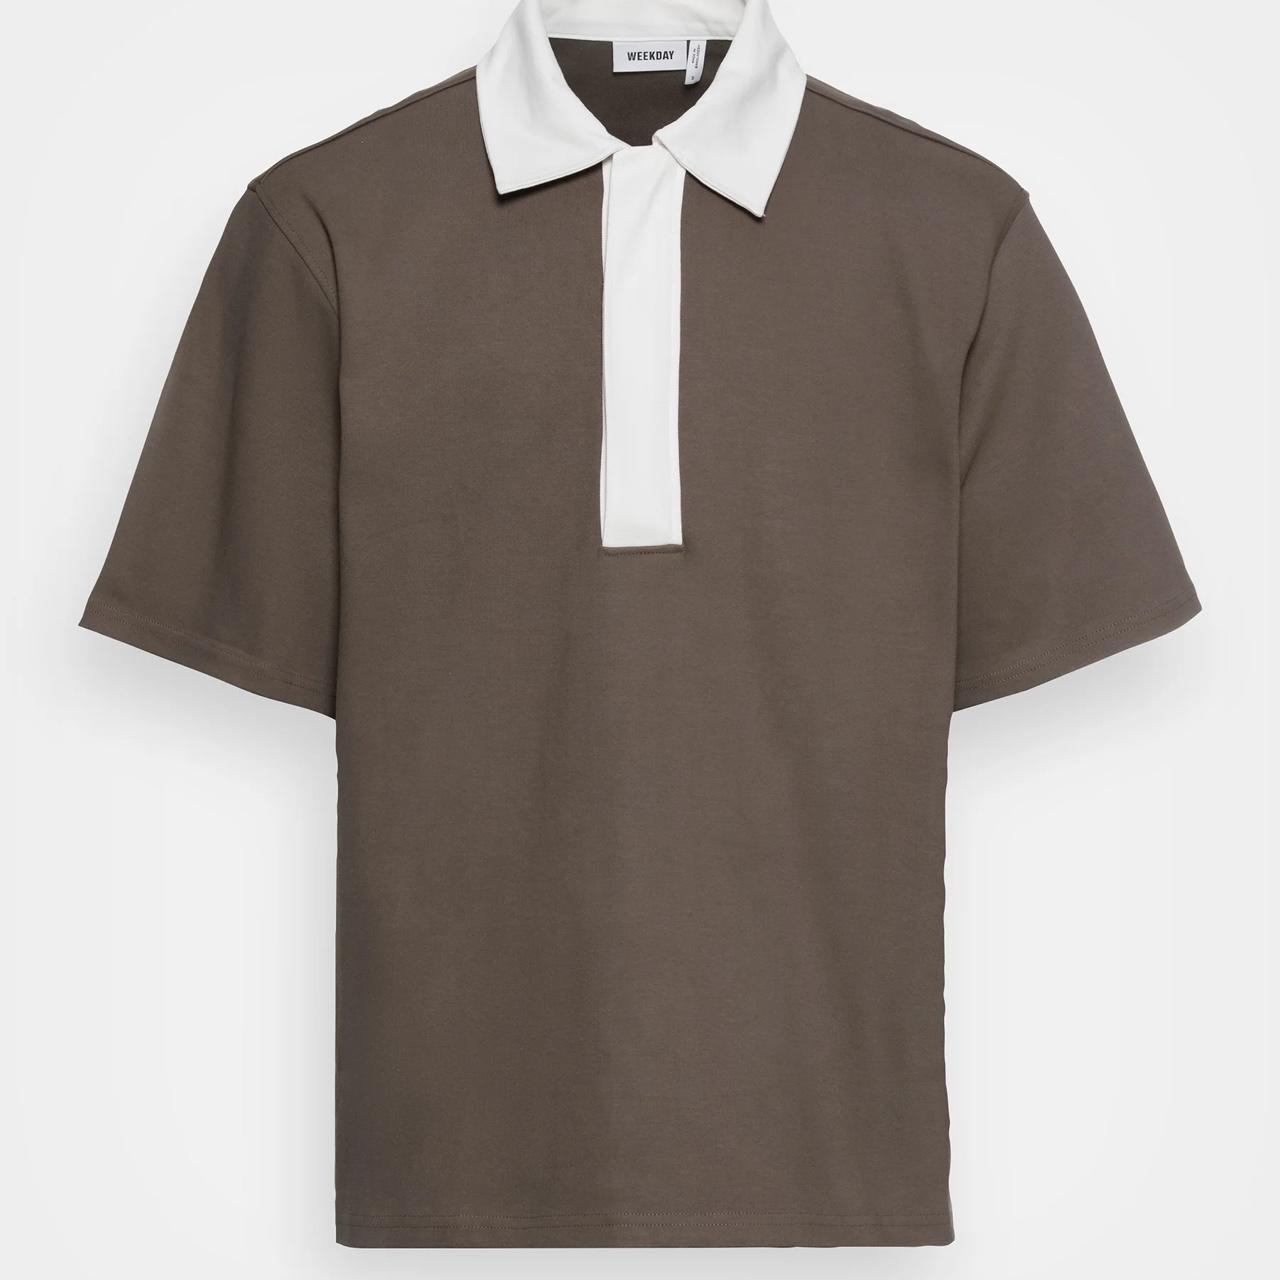 Urban Outfitters Men's Brown Shirt | Depop